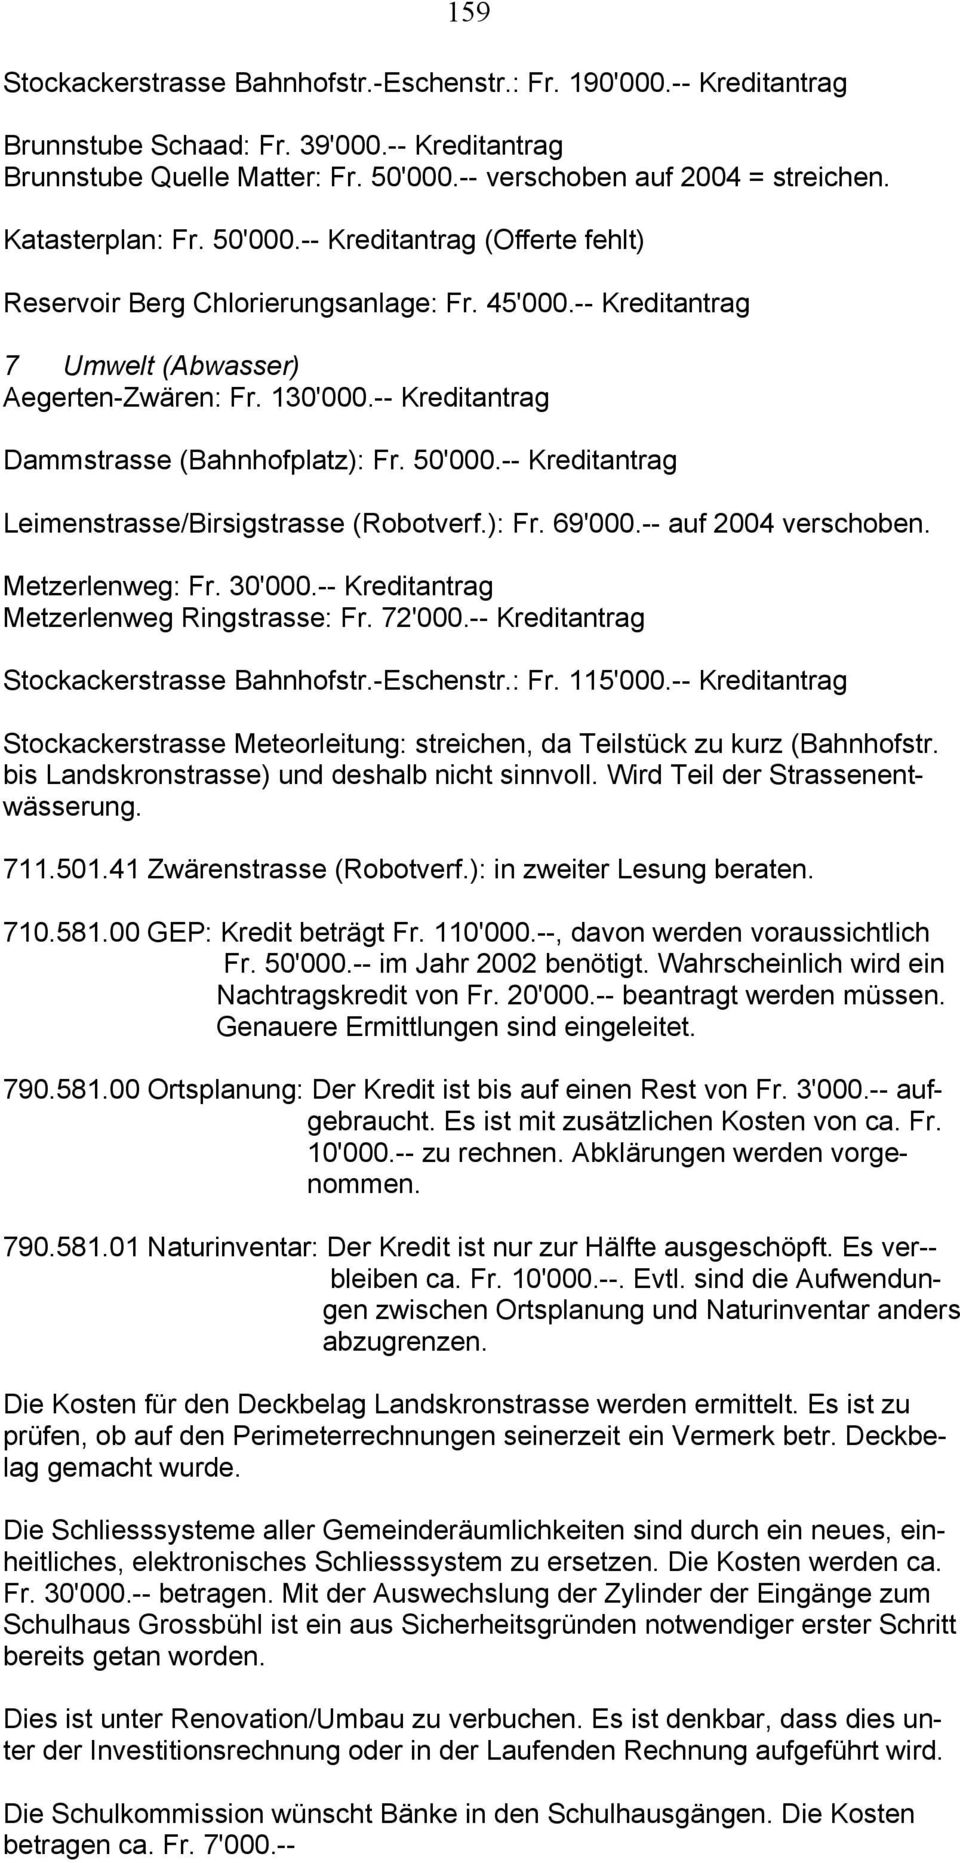 -- Kreditantrag Dammstrasse (Bahnhofplatz): Fr. 50'000.-- Kreditantrag Leimenstrasse/Birsigstrasse (Robotverf.): Fr. 69'000.-- auf 2004 verschoben. Metzerlenweg: Fr. 30'000.